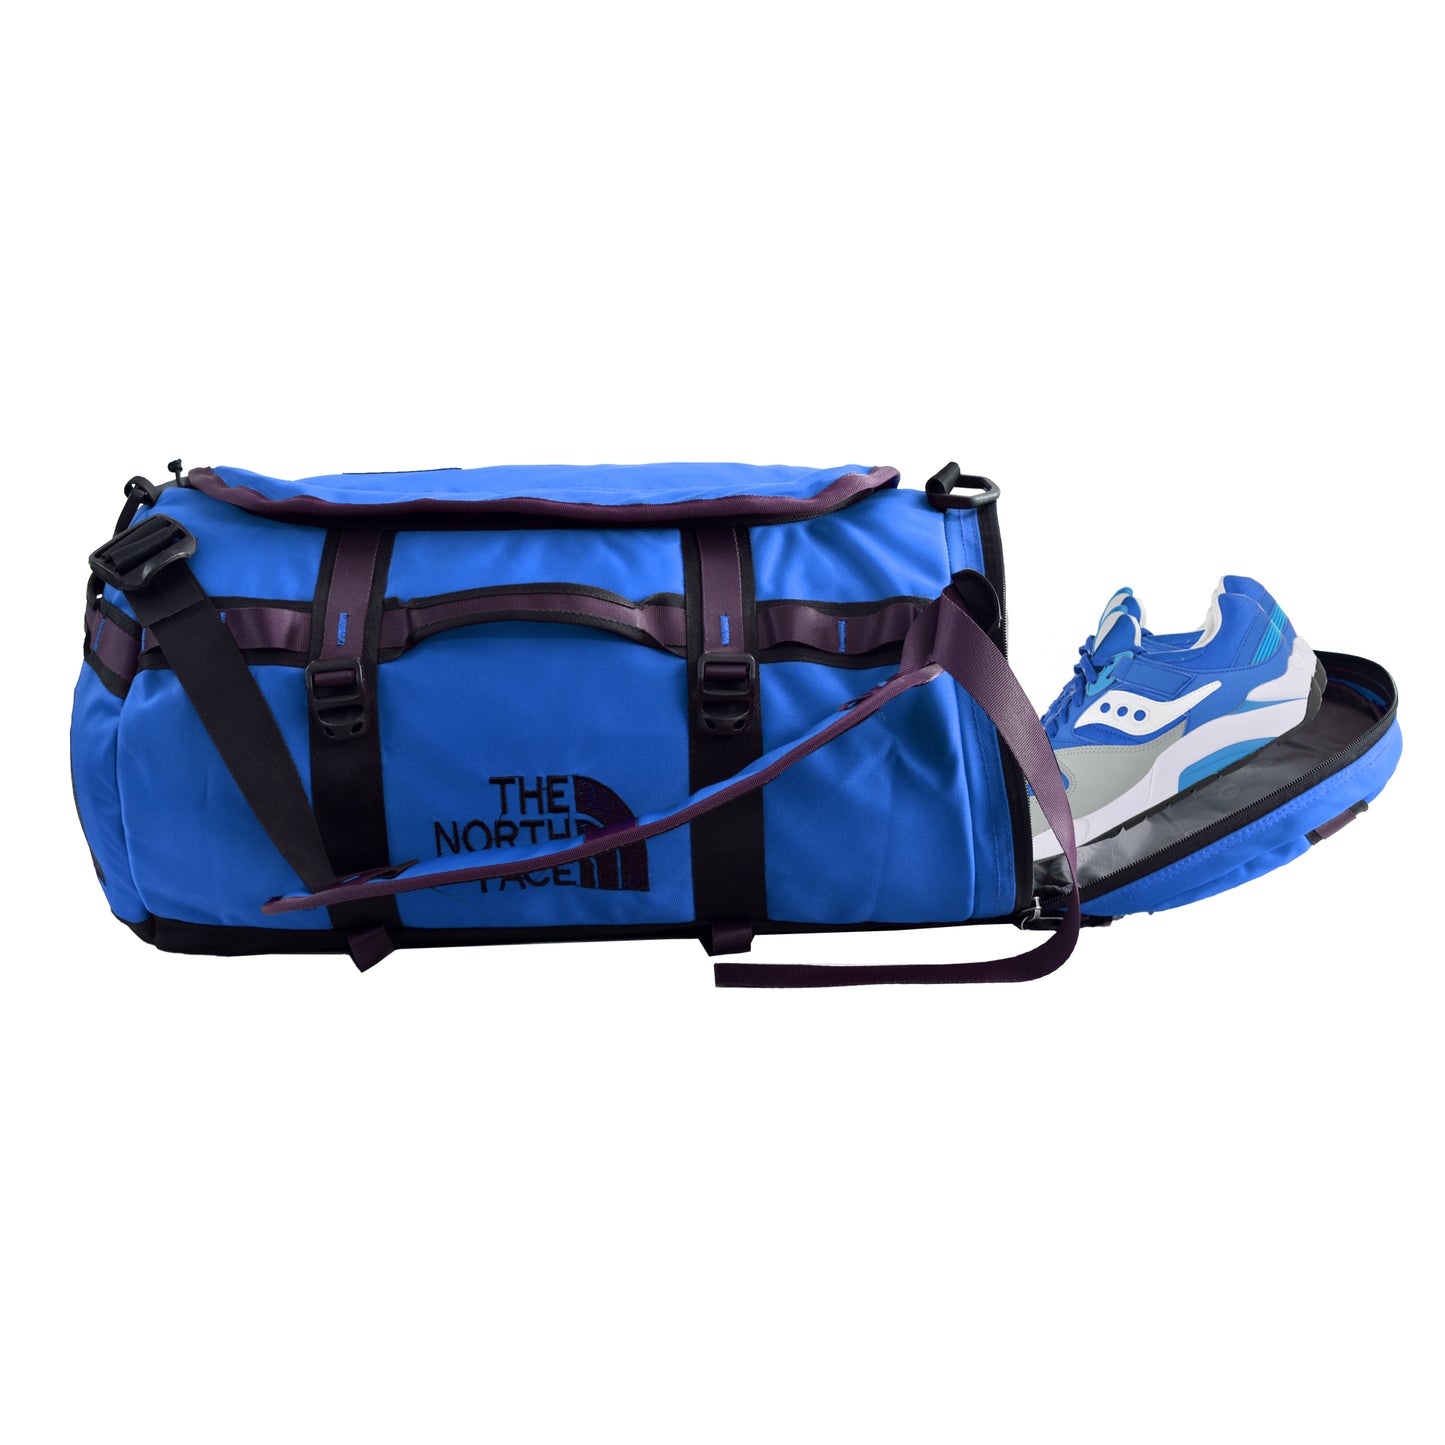 4in1 Bag - Travel Bag / Gym Bag